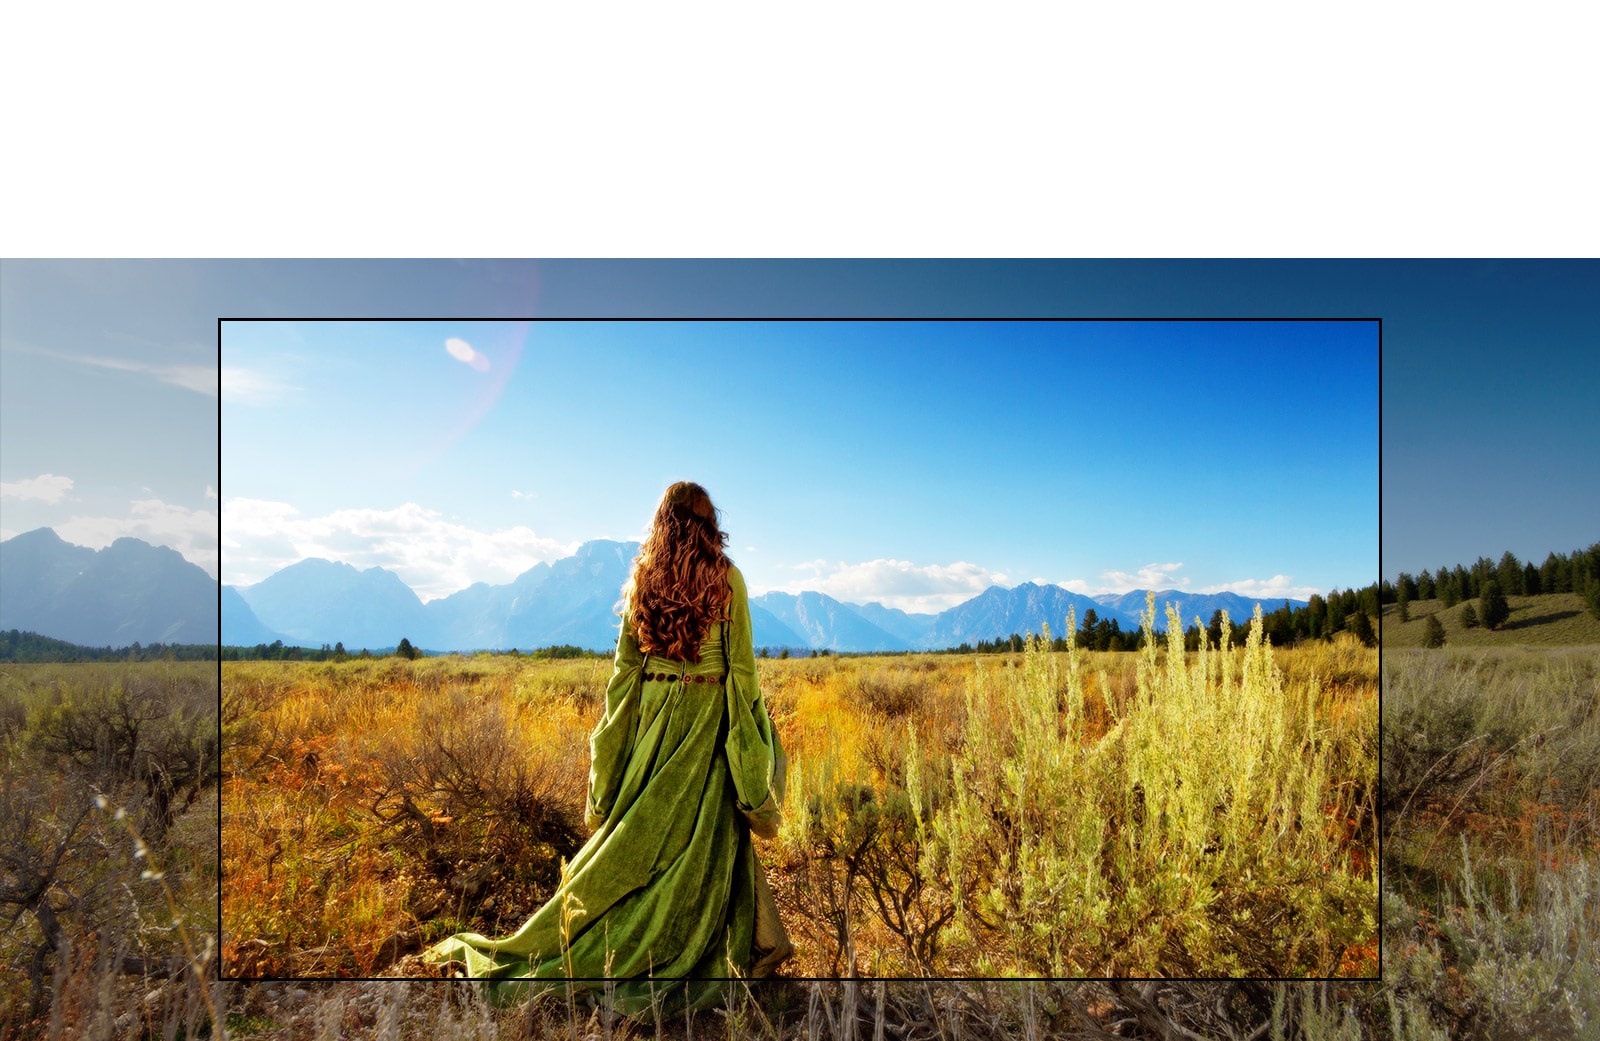 על מסך הטלוויזיה סצנה מסרט פנטזיה בה נראית אשה עומדת בשדות ופניה לכיוון ההרים.